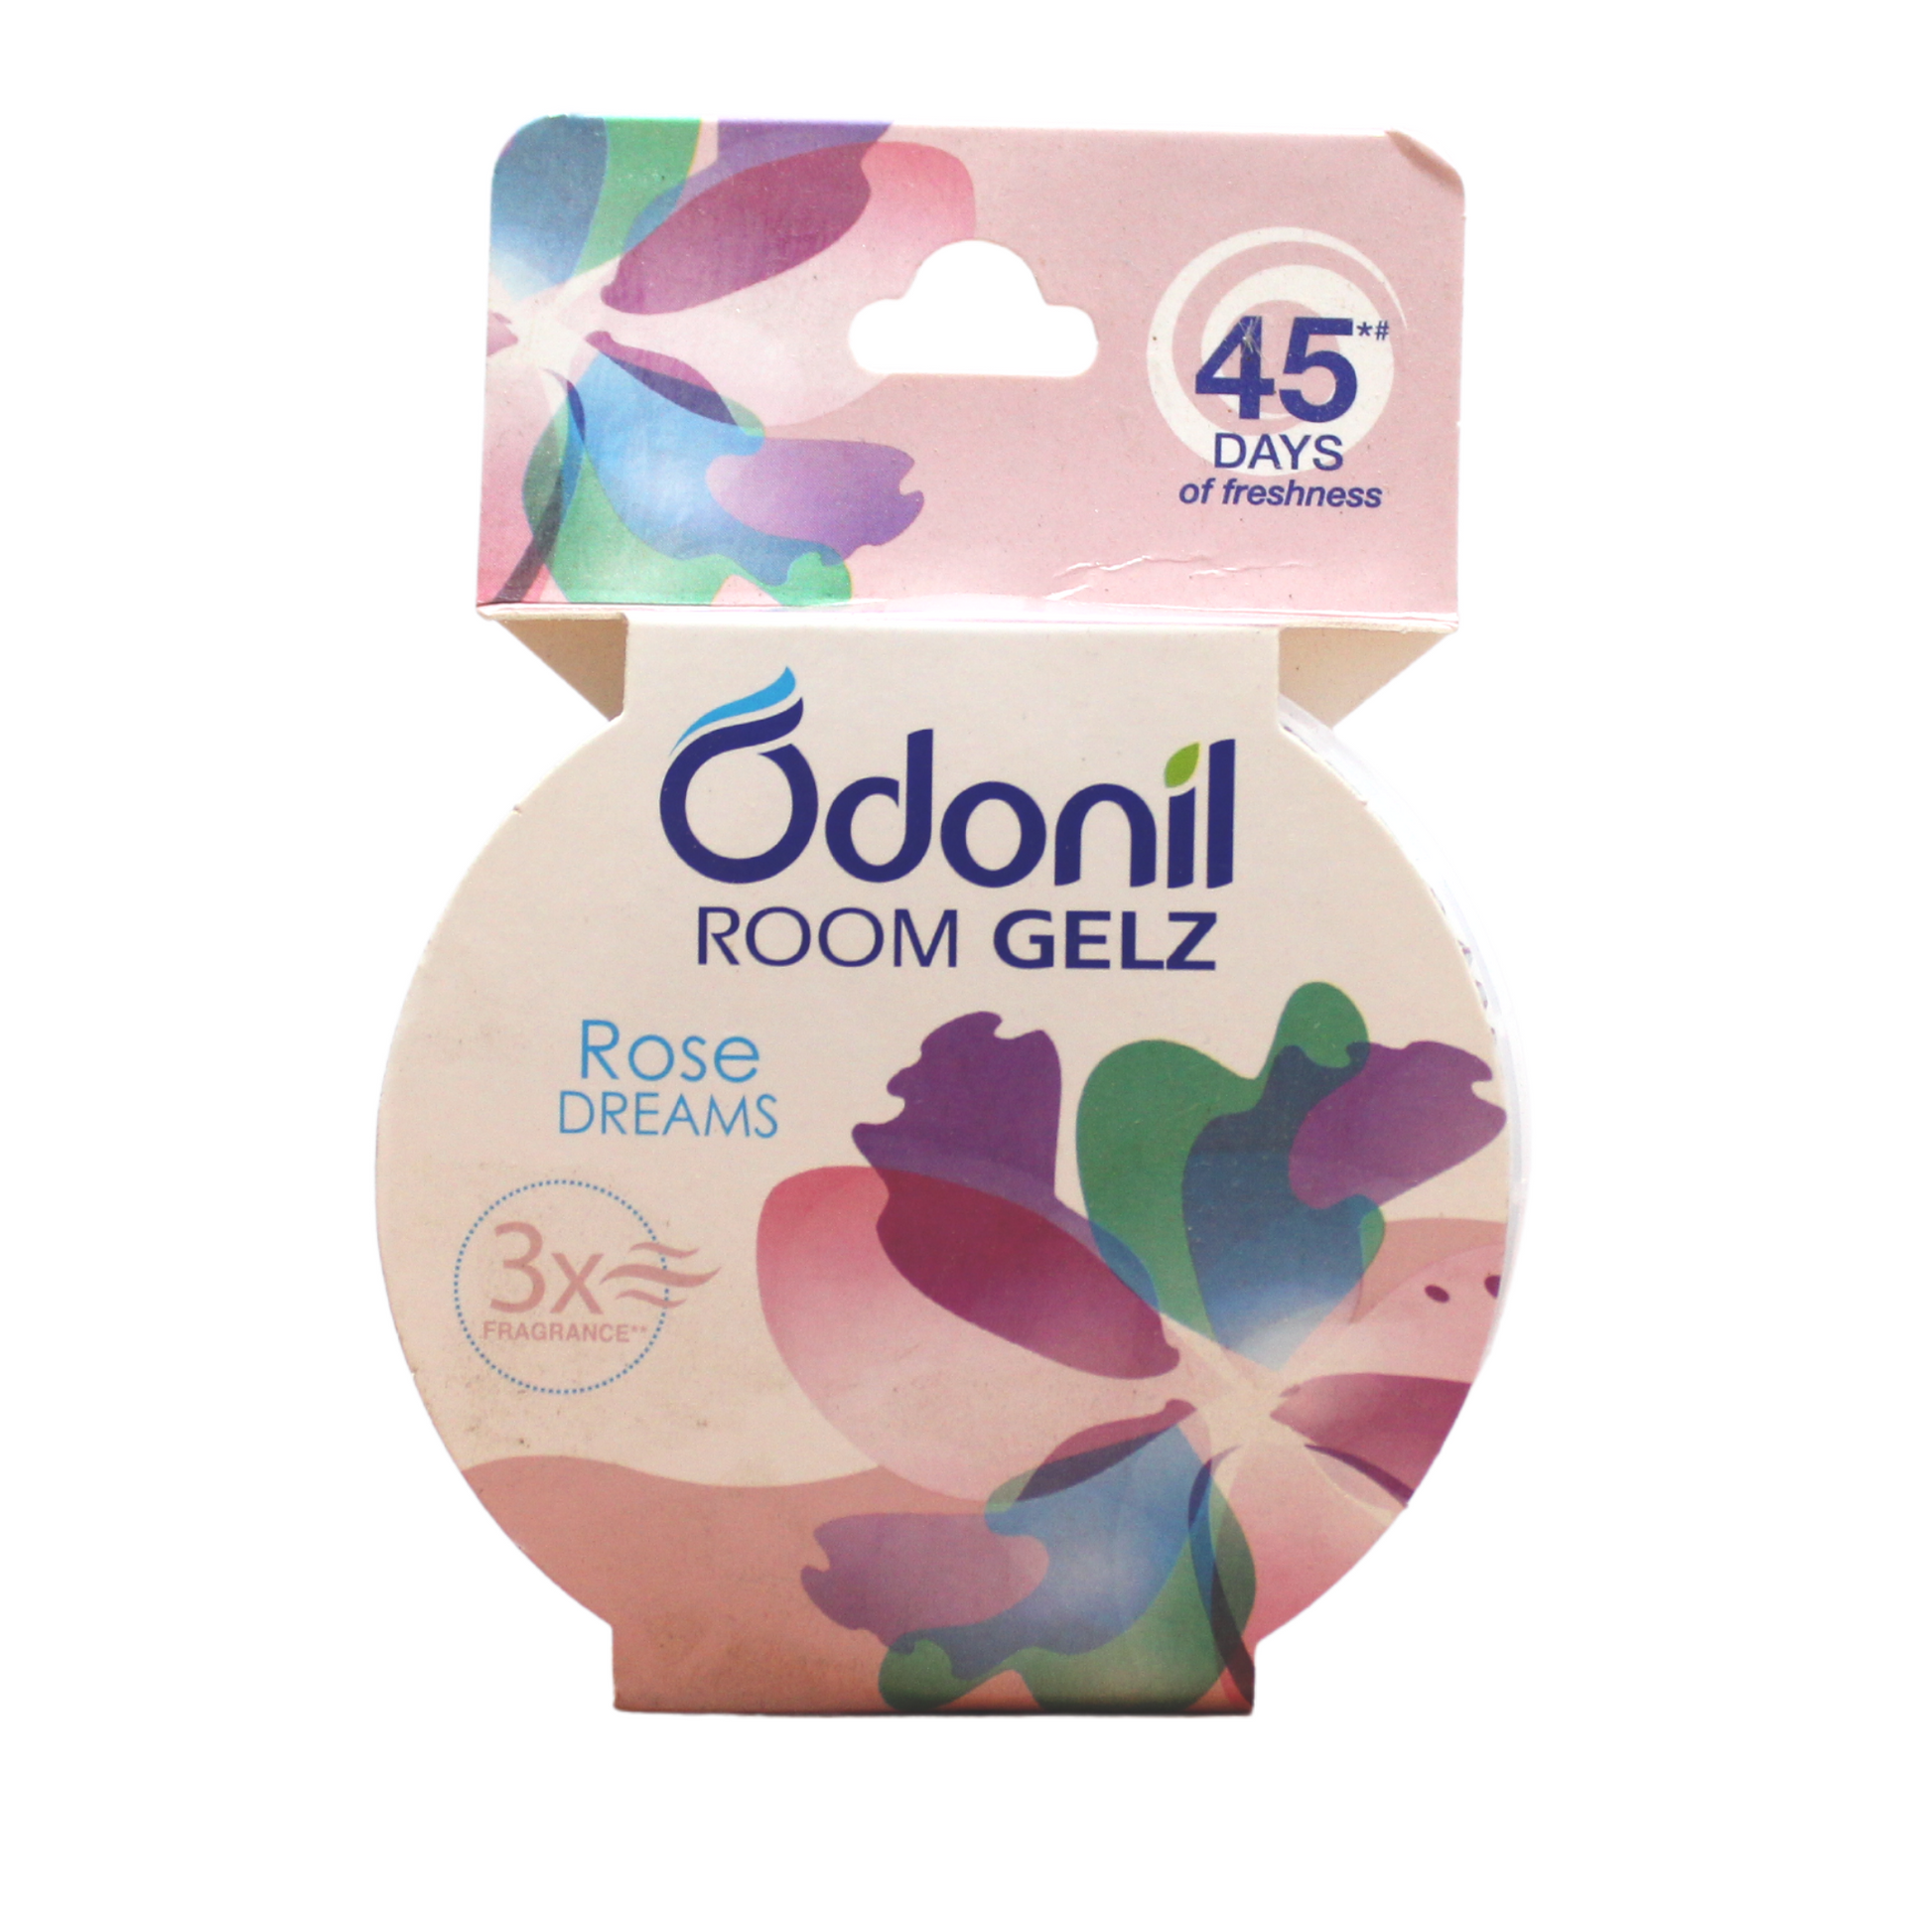 Odonil Room Gelz 75gm - Rose dreams -  Dabur - Medizzo.com